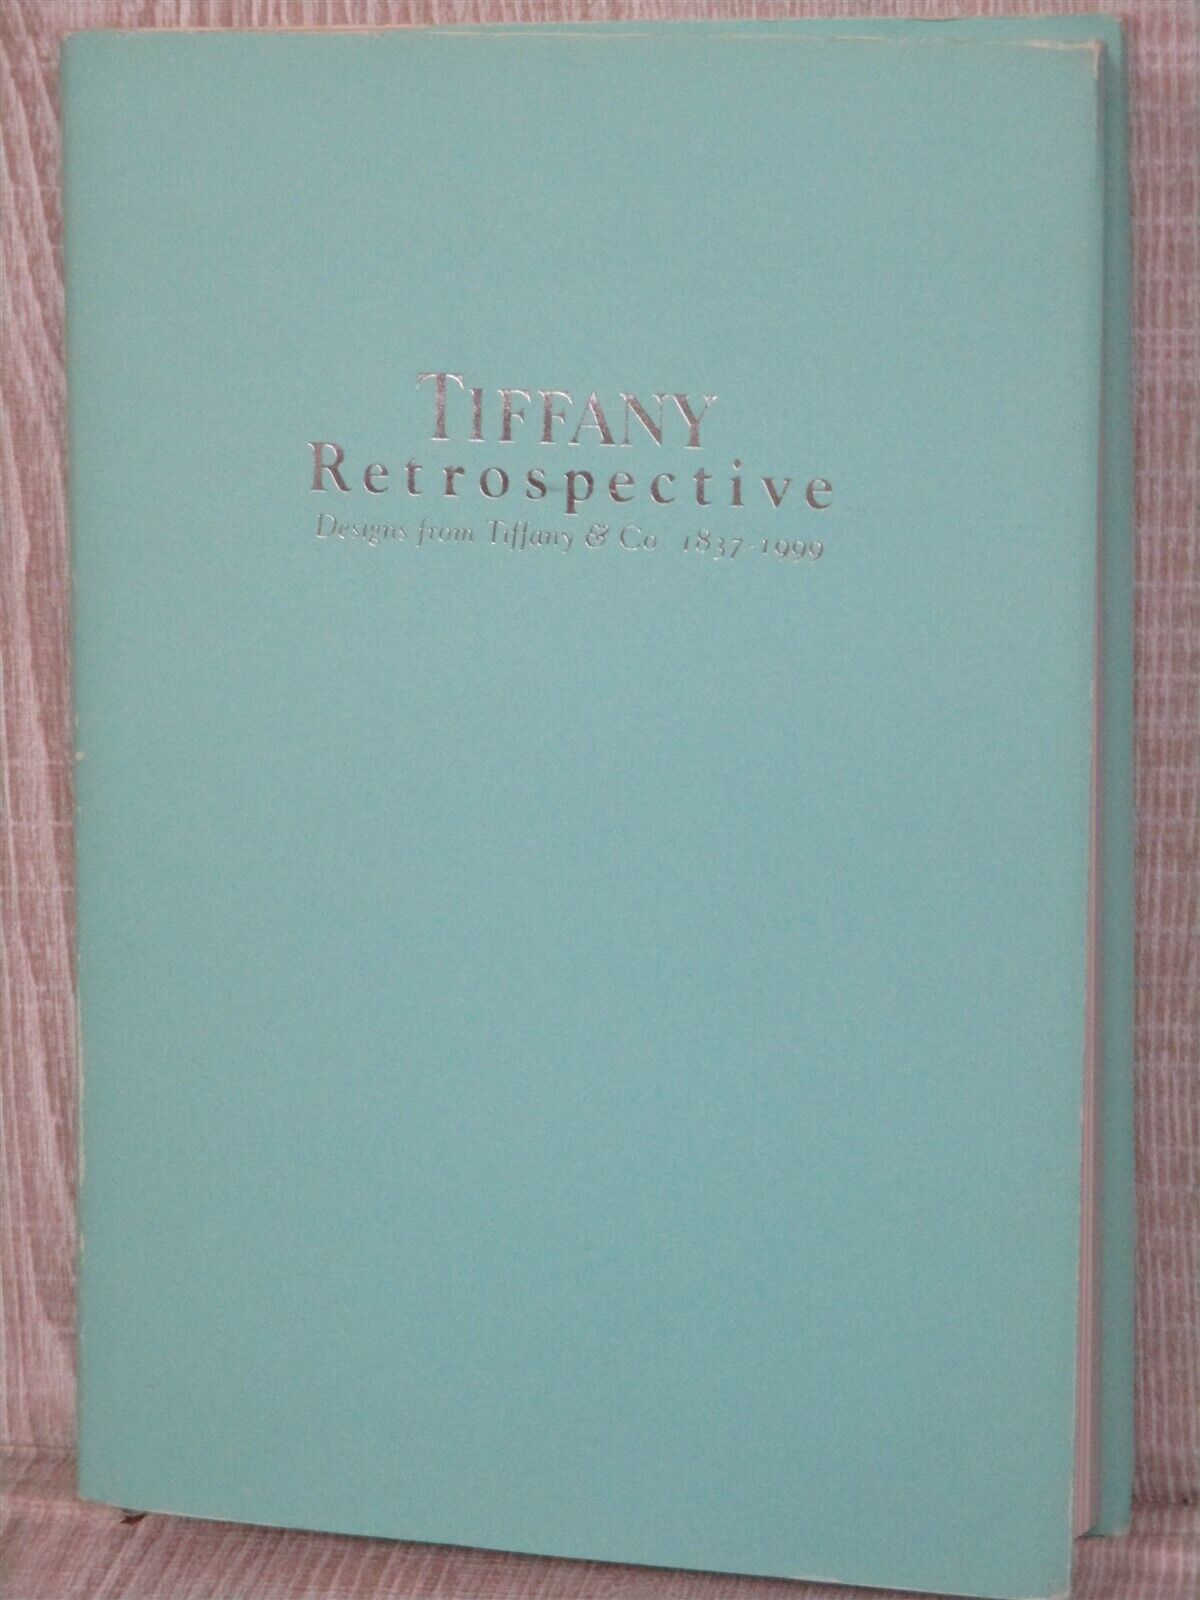 TIFFANY RETROSPECTIVE 1999 Exhibition Ltd Fashion Mode Art Photo Book Art Deco